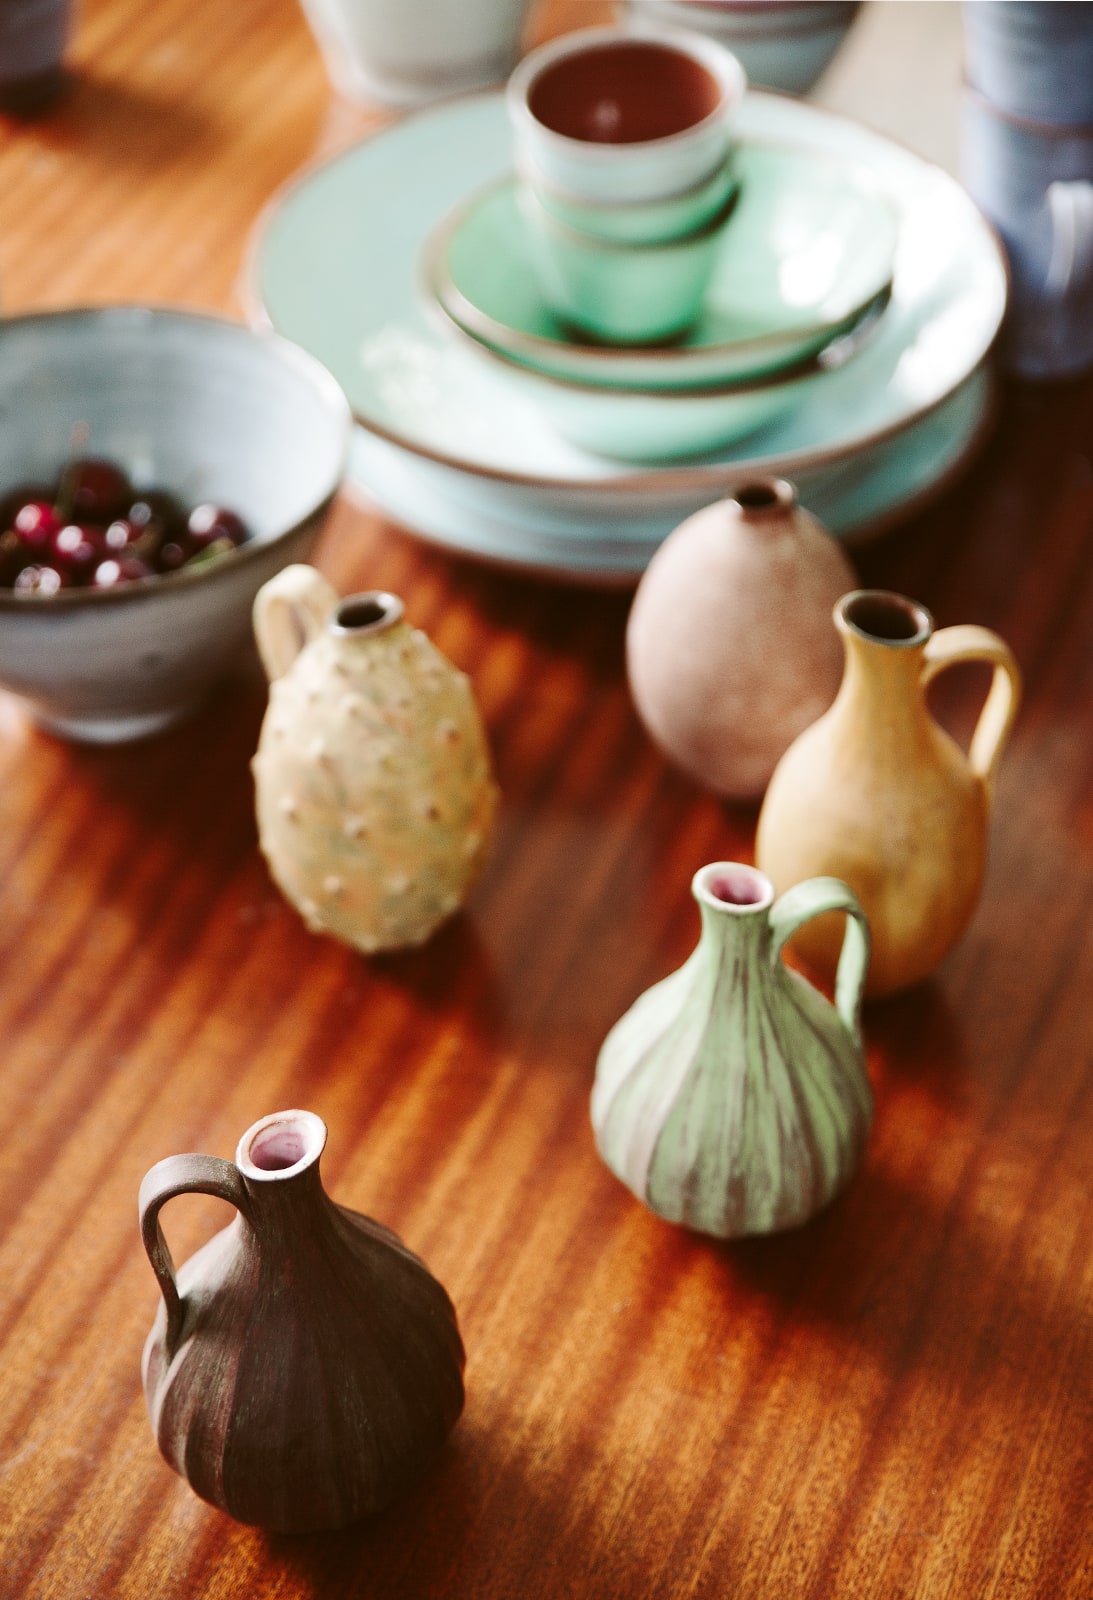 Assorted pottery by Kathryn Smythe